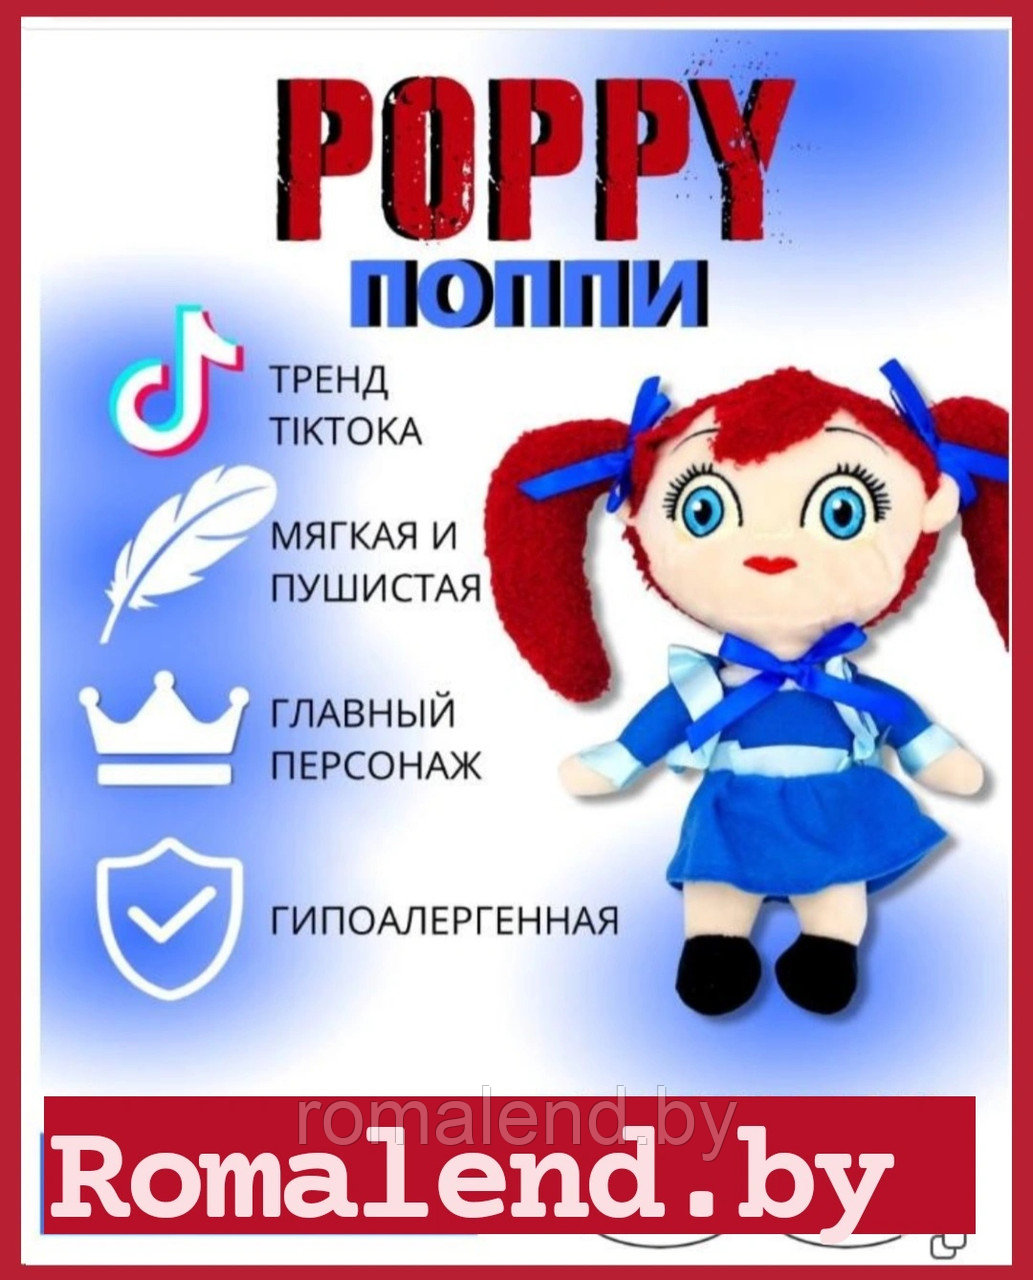 Мягкая игрушка кукла Поппи poppy playtime Попи плэйтайм сестра Хаги Ваги:  продажа, цена, отзывы, в Минске и Беларуси мягкие игрушки